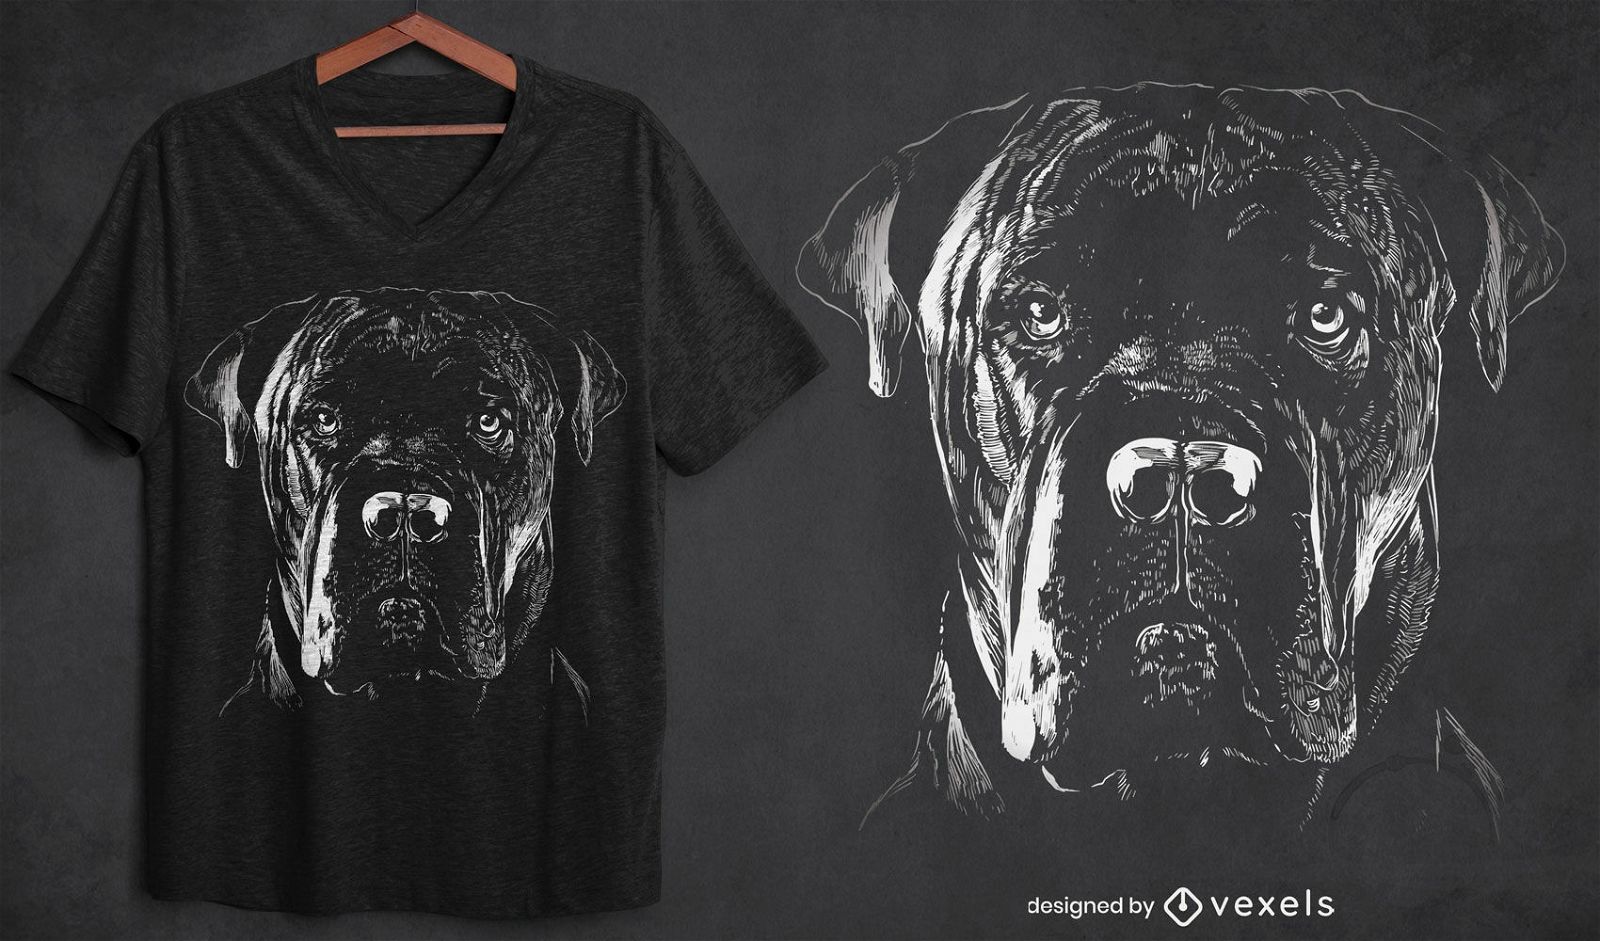 Design de t-shirt cane corso c?o